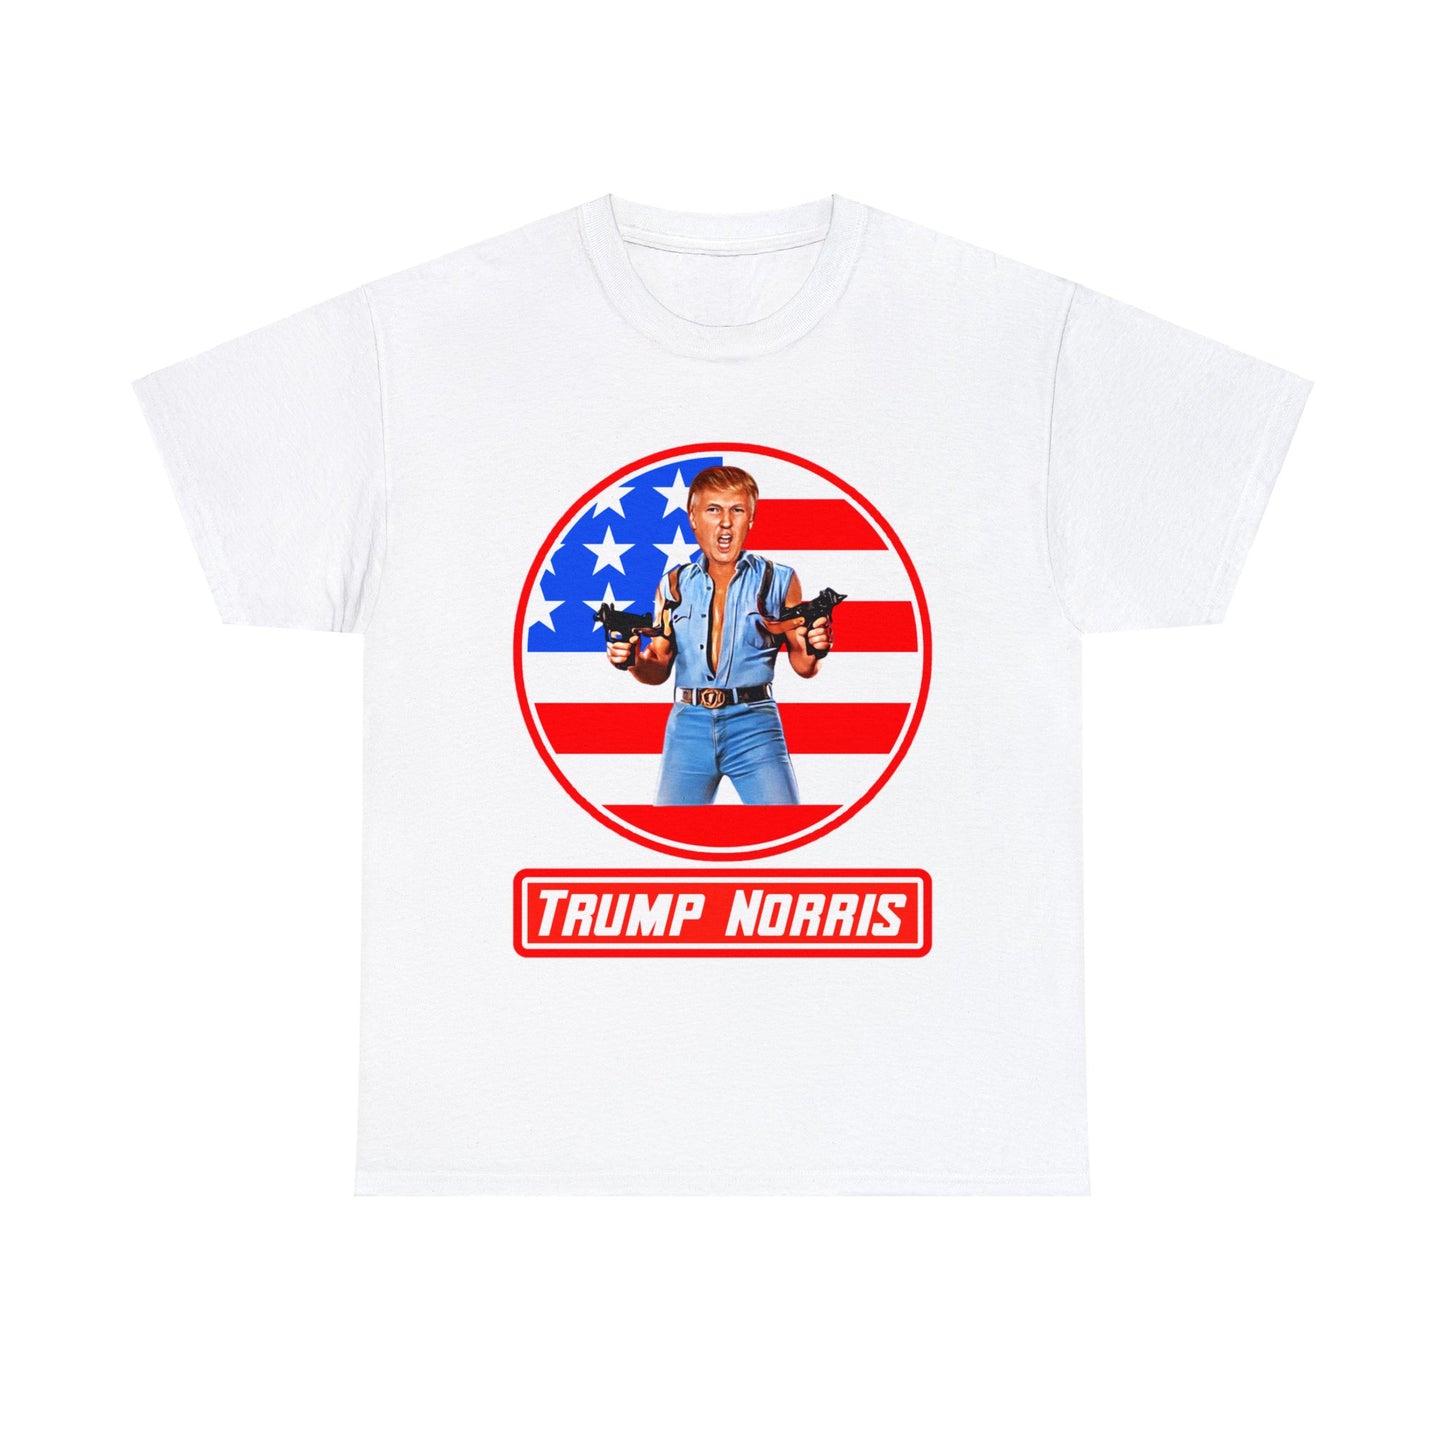 Trump Norris Shirt